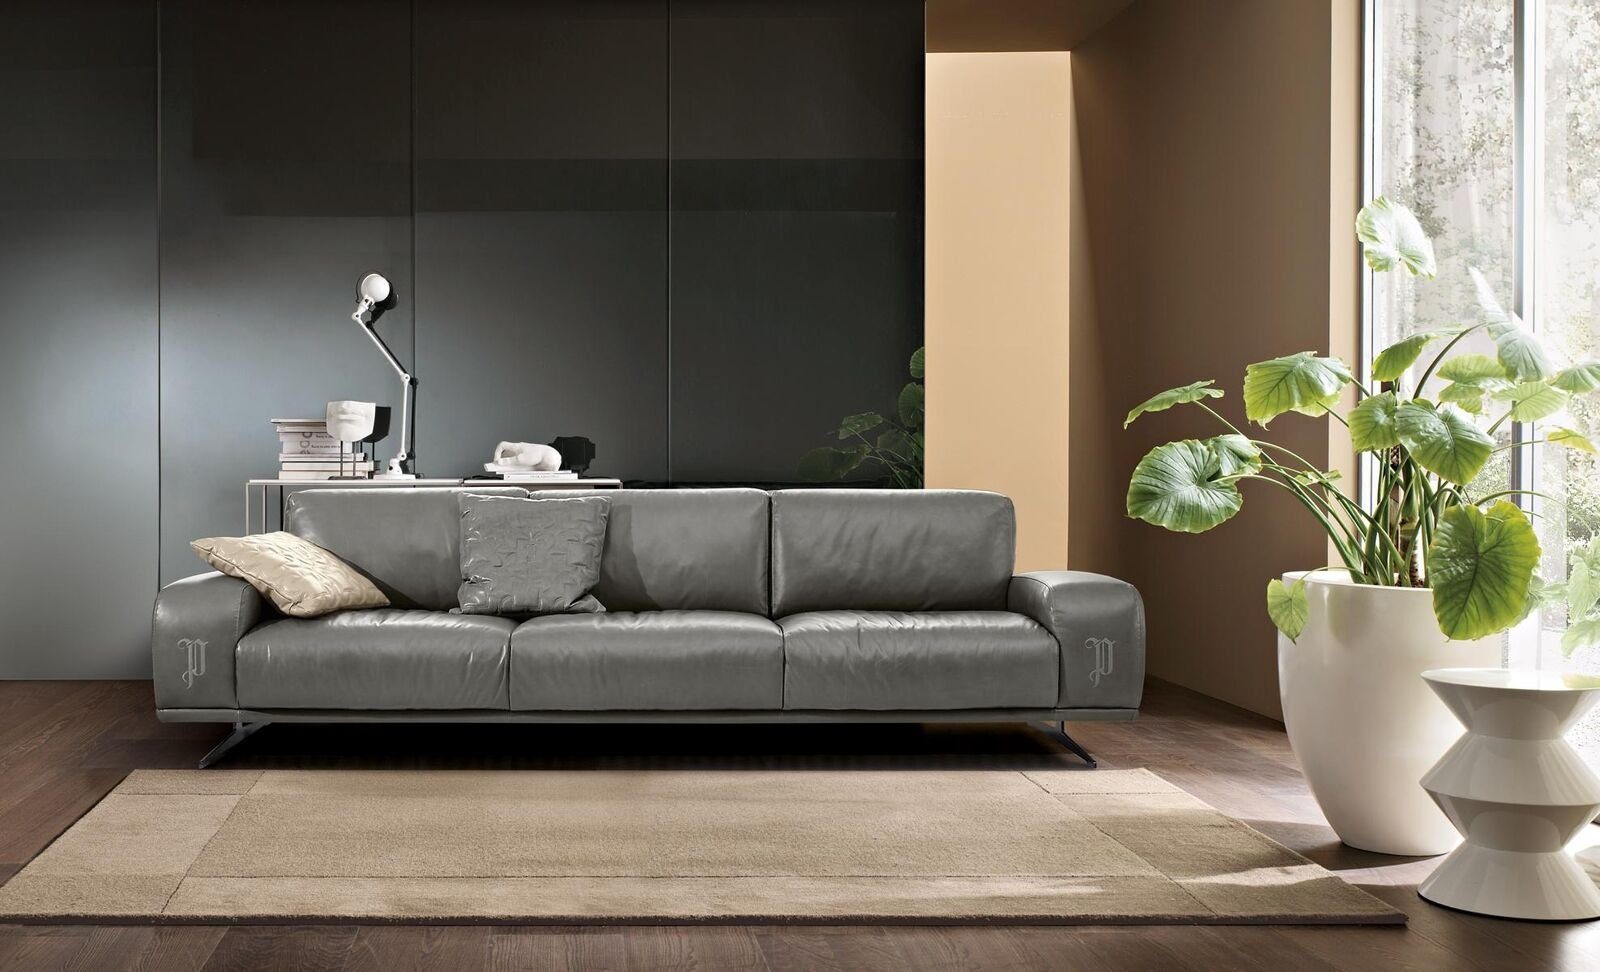 JVmoebel Sofa Sofa 3 Sitz Luxus Möbel Wohnzimmer Leder Couch Dreisitzer Grau Design